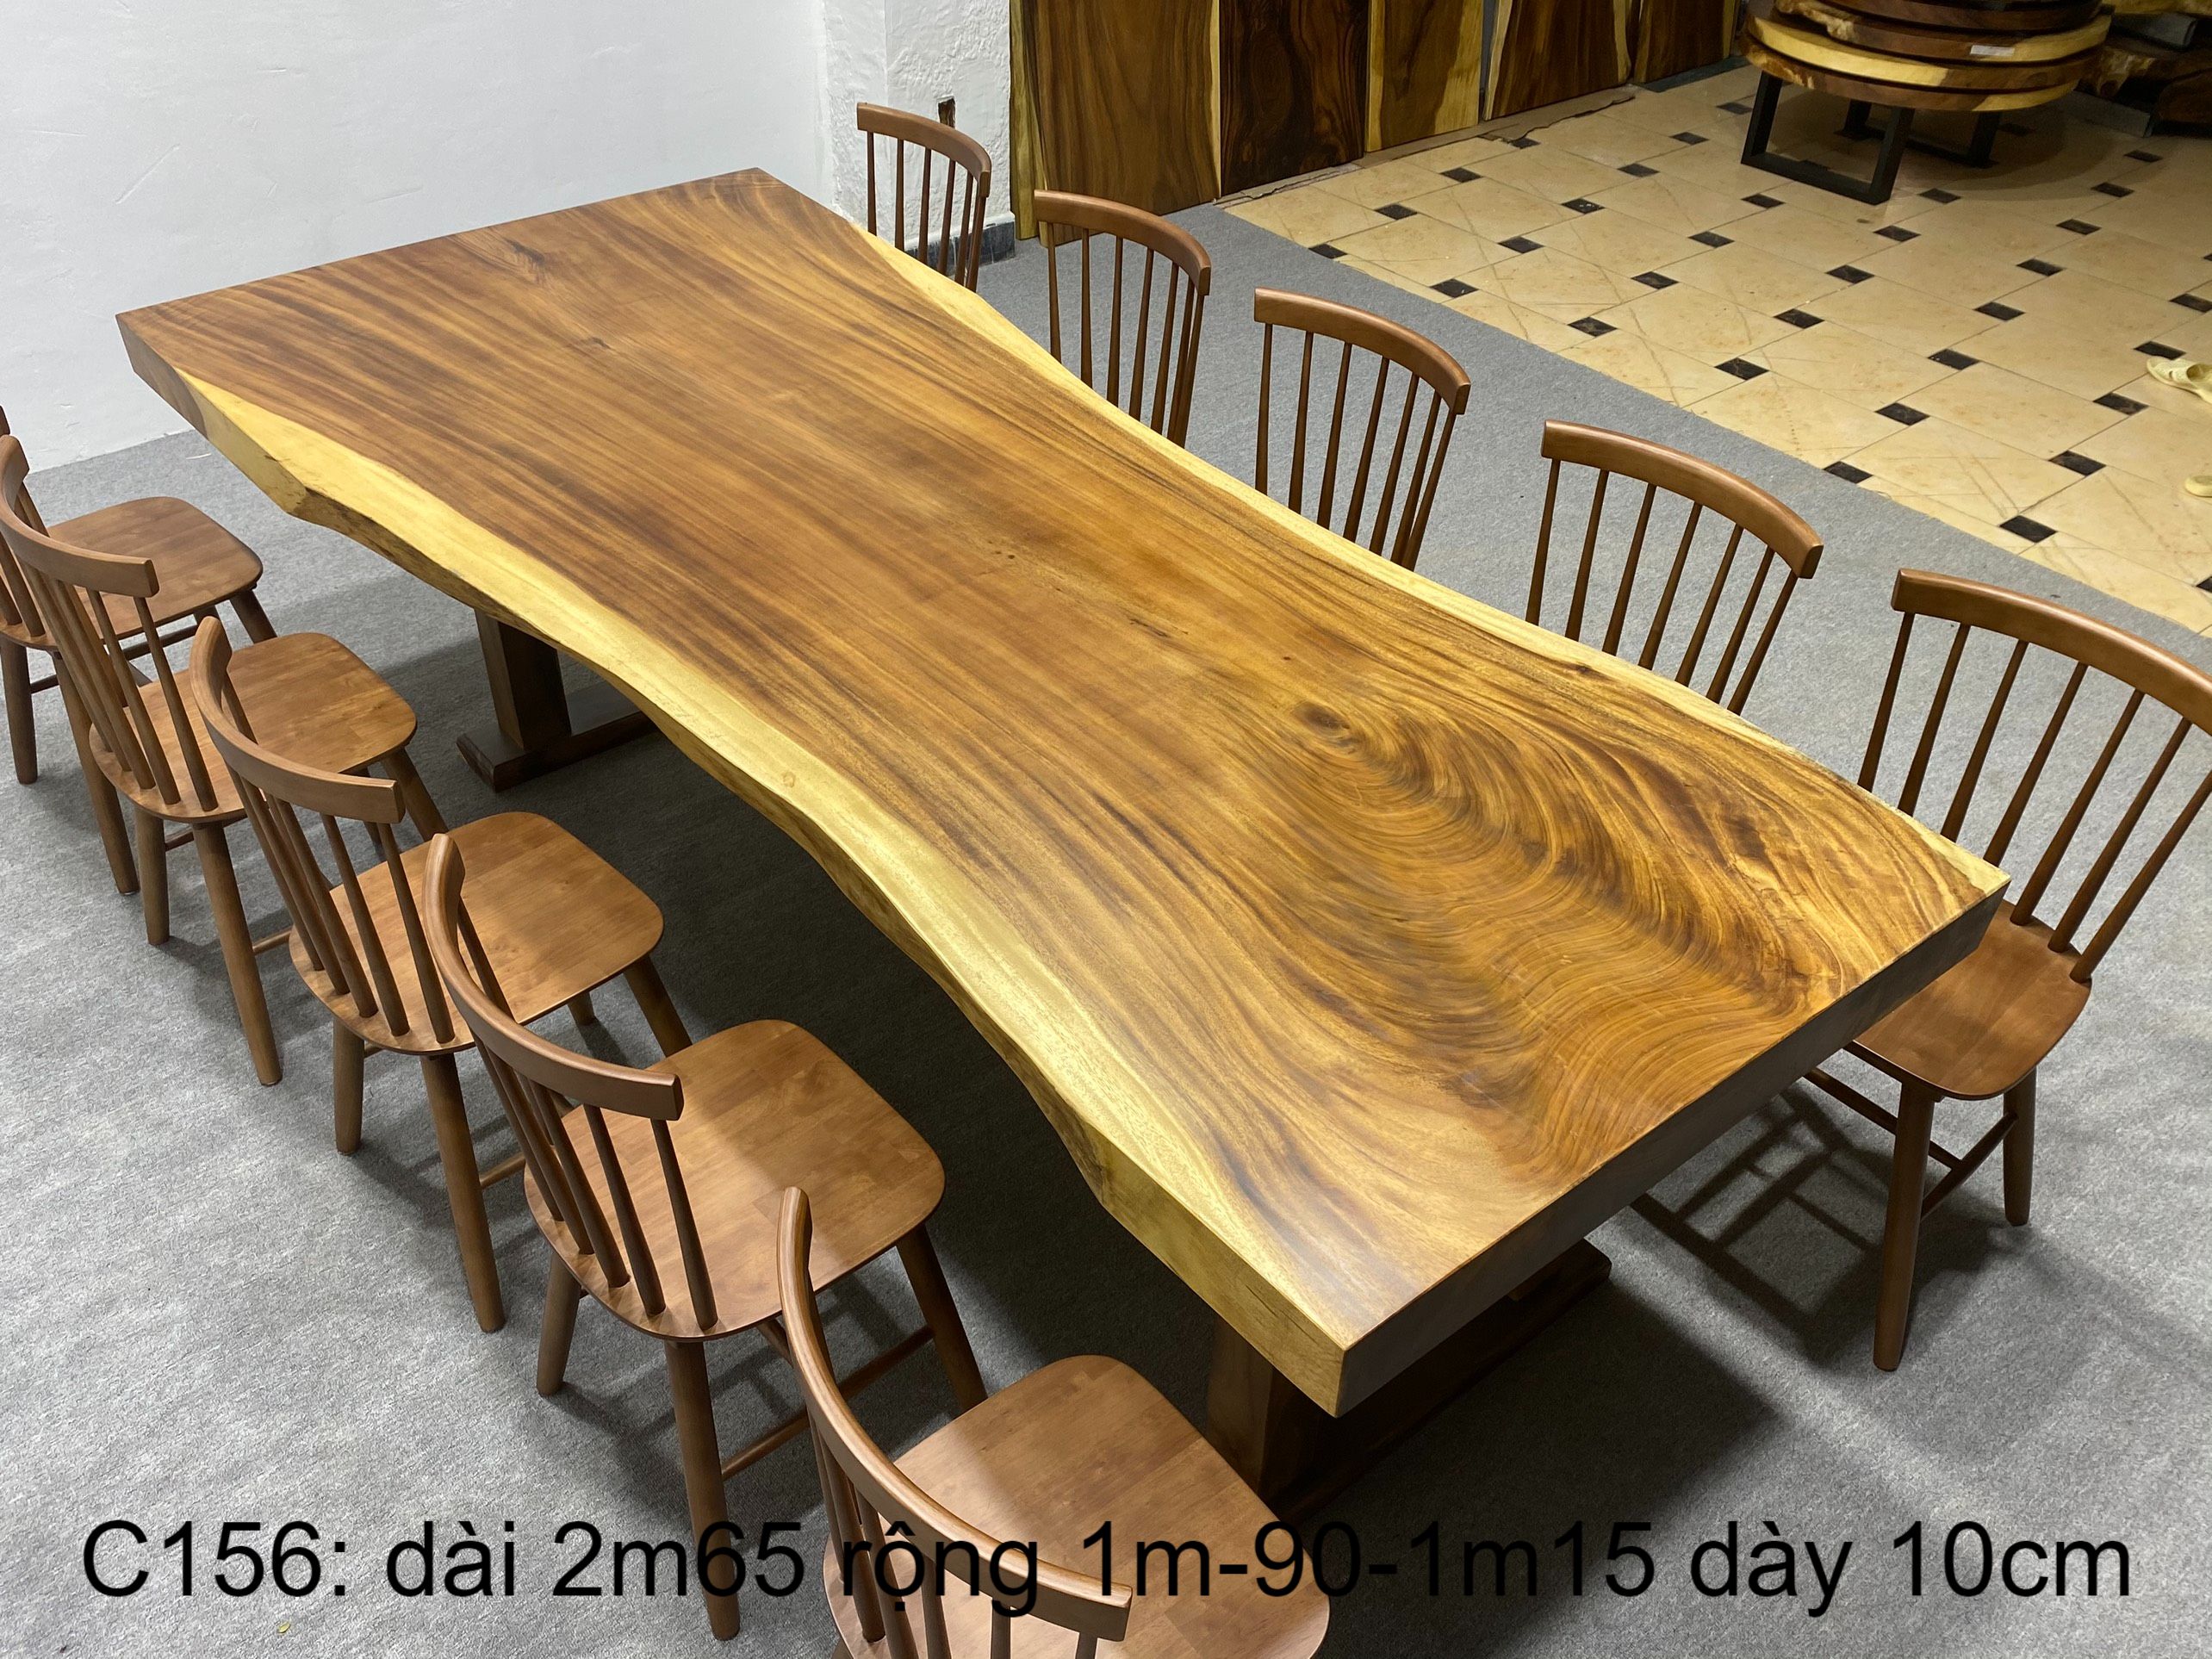 1 Chuyên cung cấp bàn ghế gỗ me tây nguyên tấm giá tại xưởng không qua trung gian